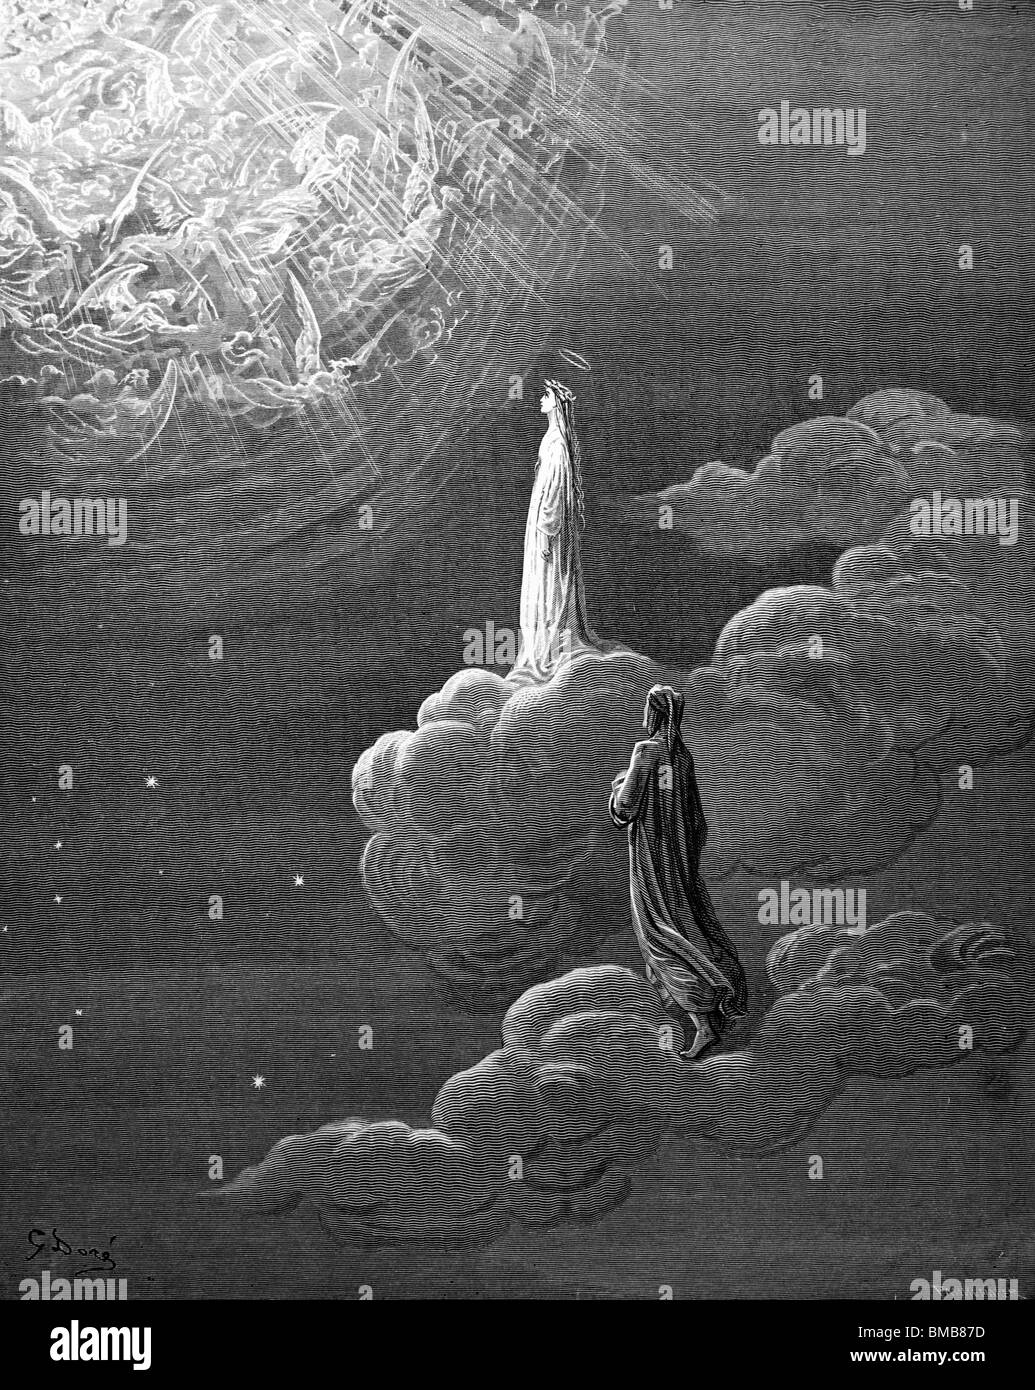 Grabado de Gustave Doré de la Divina Comedia de Dante Alighieri, Dante y Beatrice testimonio los espíritus en la esfera de Marte Foto de stock